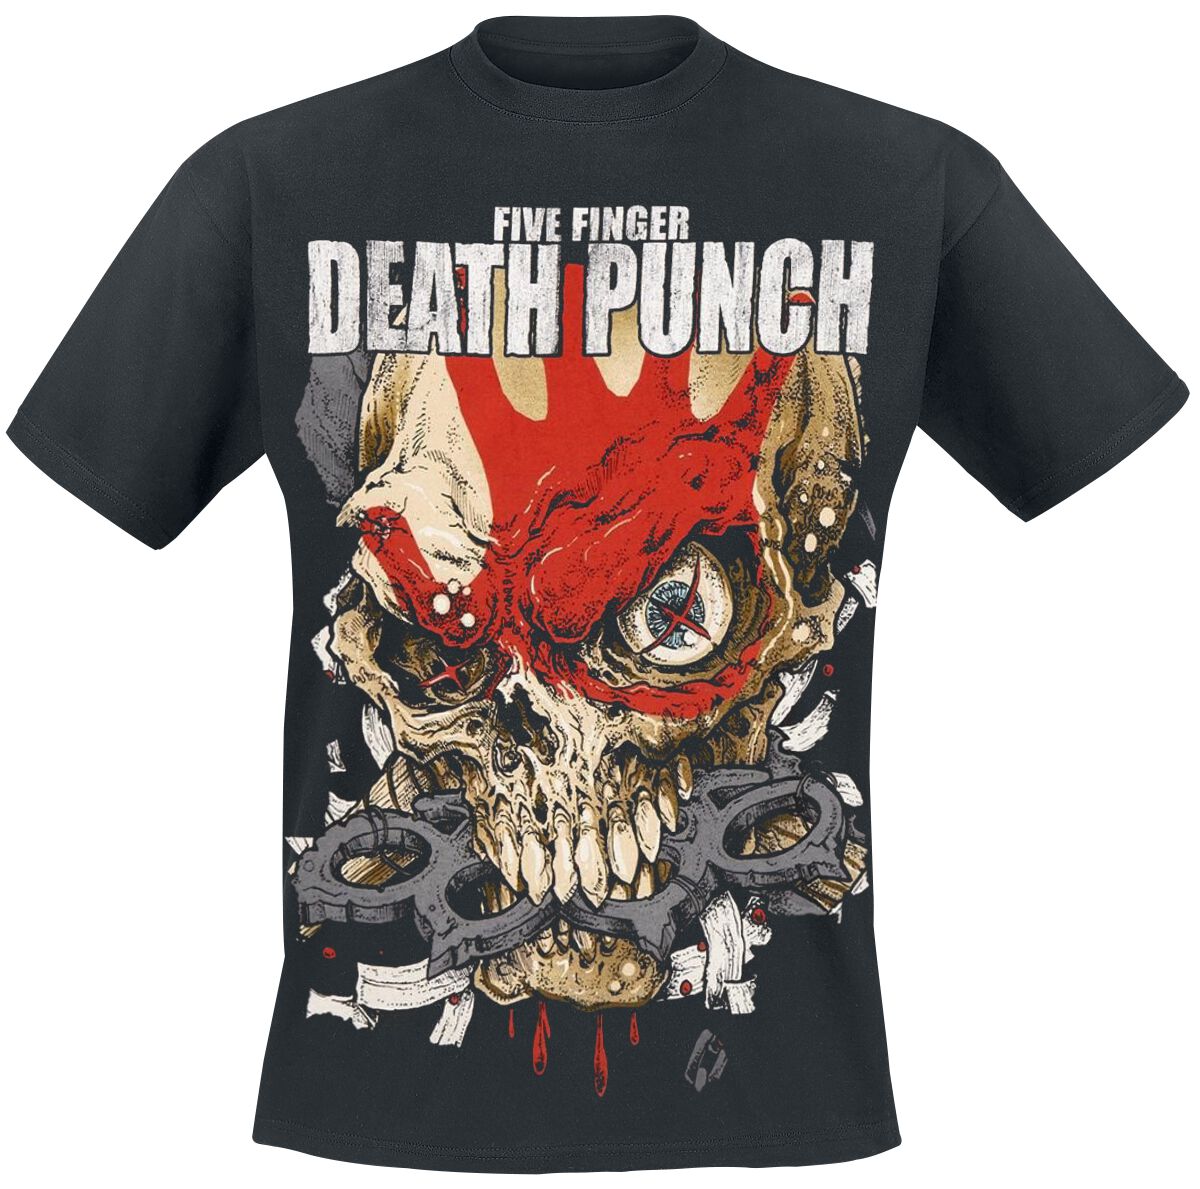 Five Finger Death Punch T-Shirt - Knucklehead Kopia Exploded - S bis XXL - für Männer - Größe S - schwarz  - Lizenziertes Merchandise!